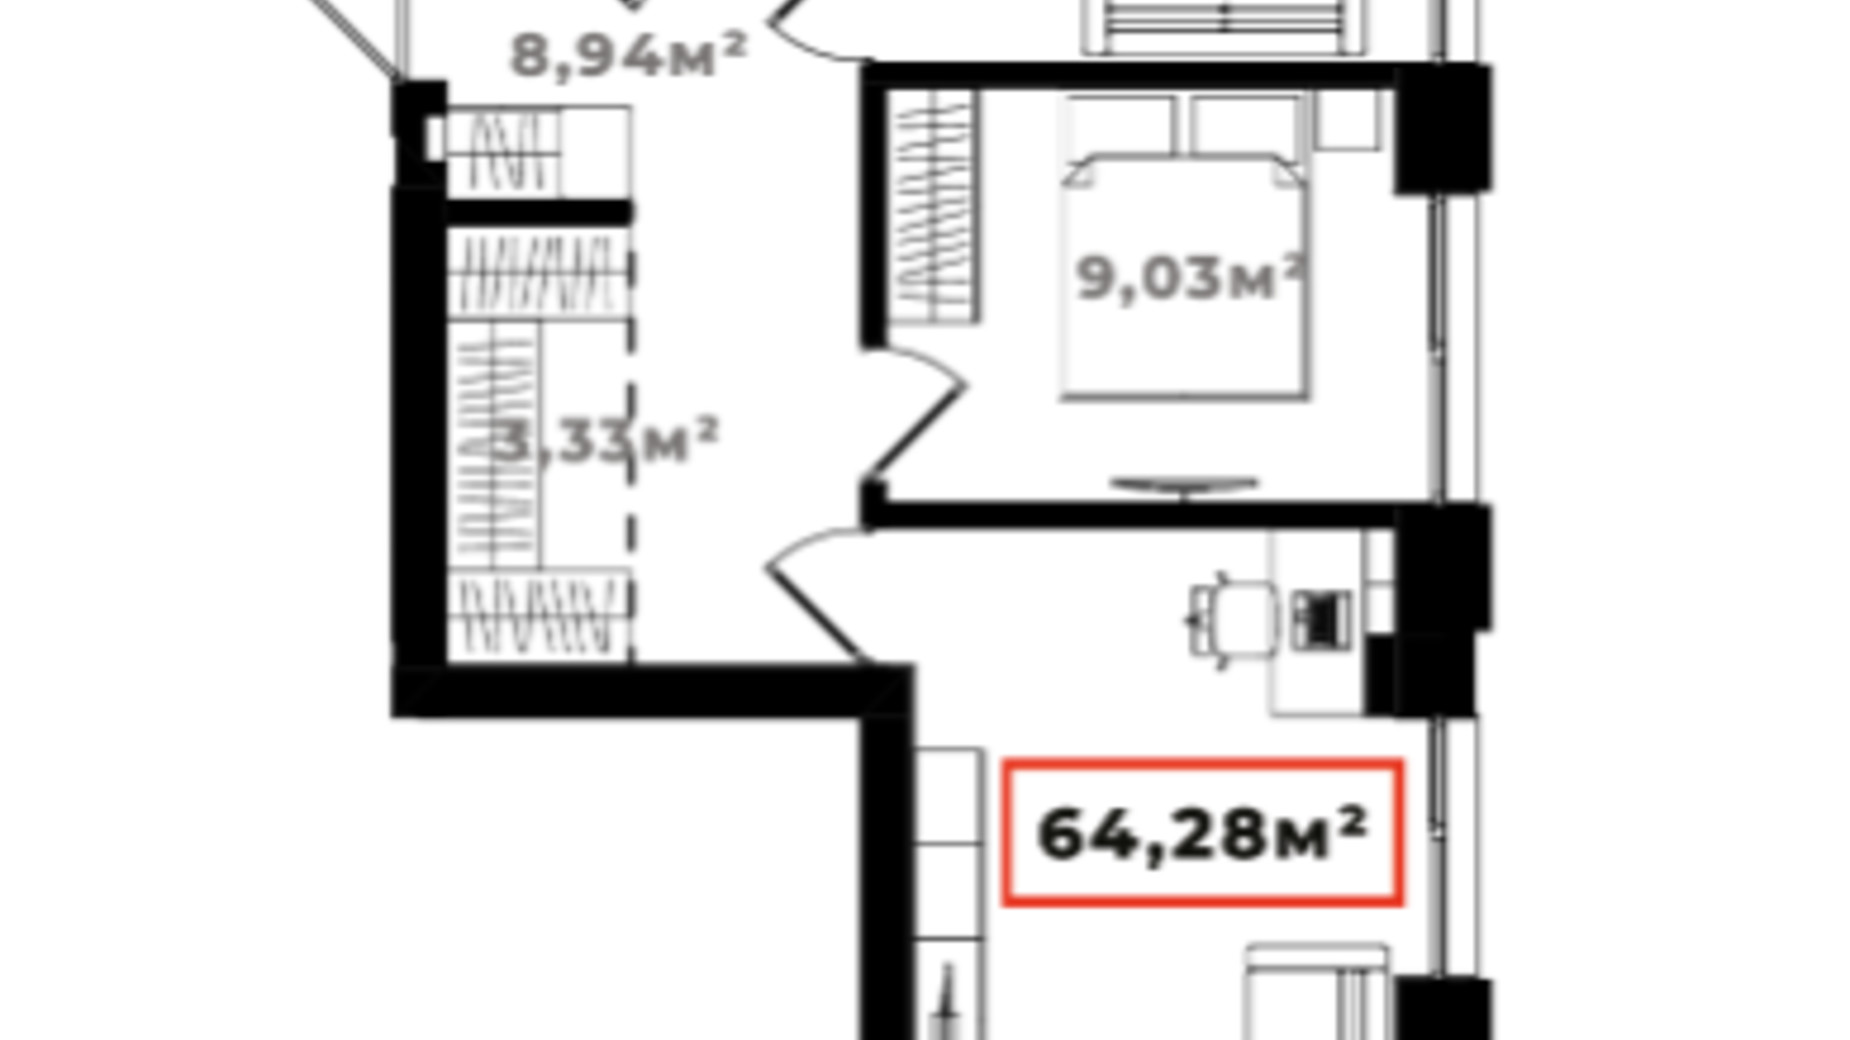 Планировка 2-комнатной квартиры в ЖК Ярко Центр 64.28 м², фото 659893